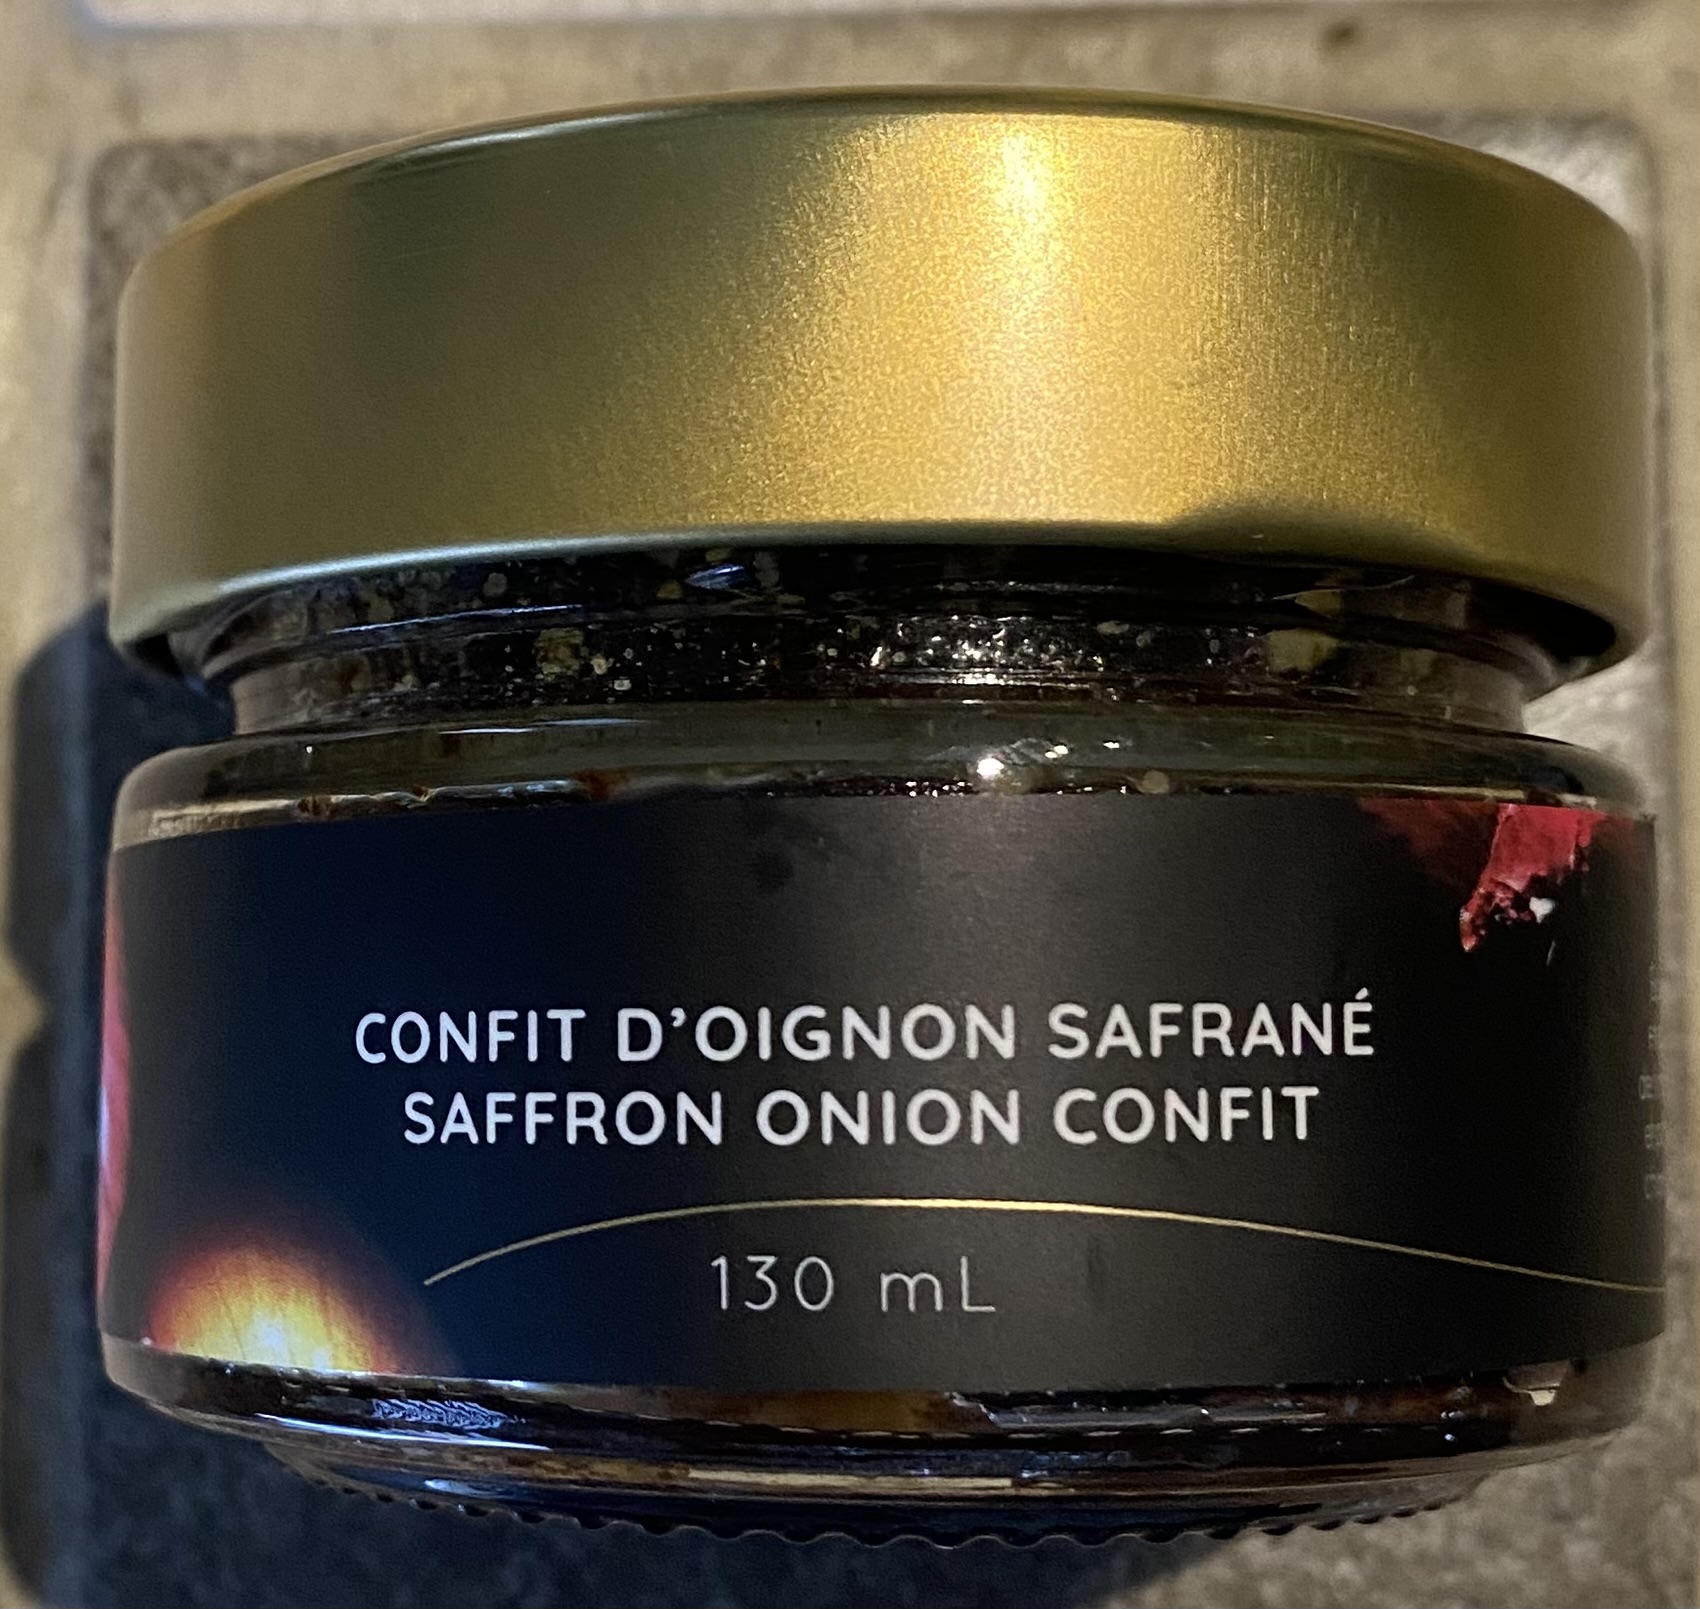 Confit d'oignons au safran du Quercy - 100g — Les Fins Gourmets